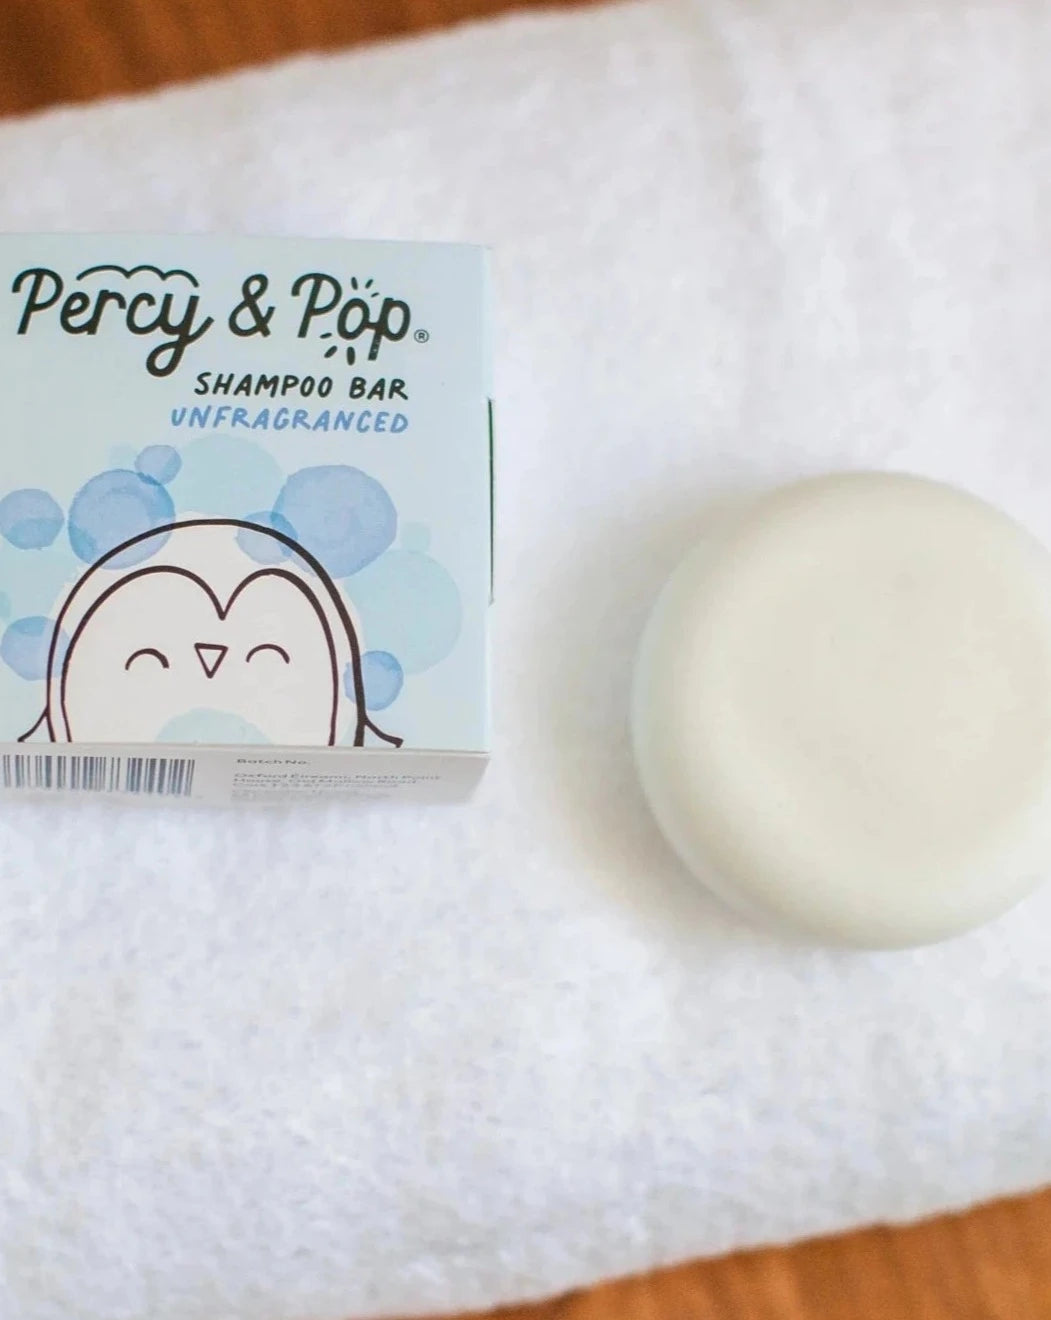 Unfragranced Shampoo Bar | Percy & Pop